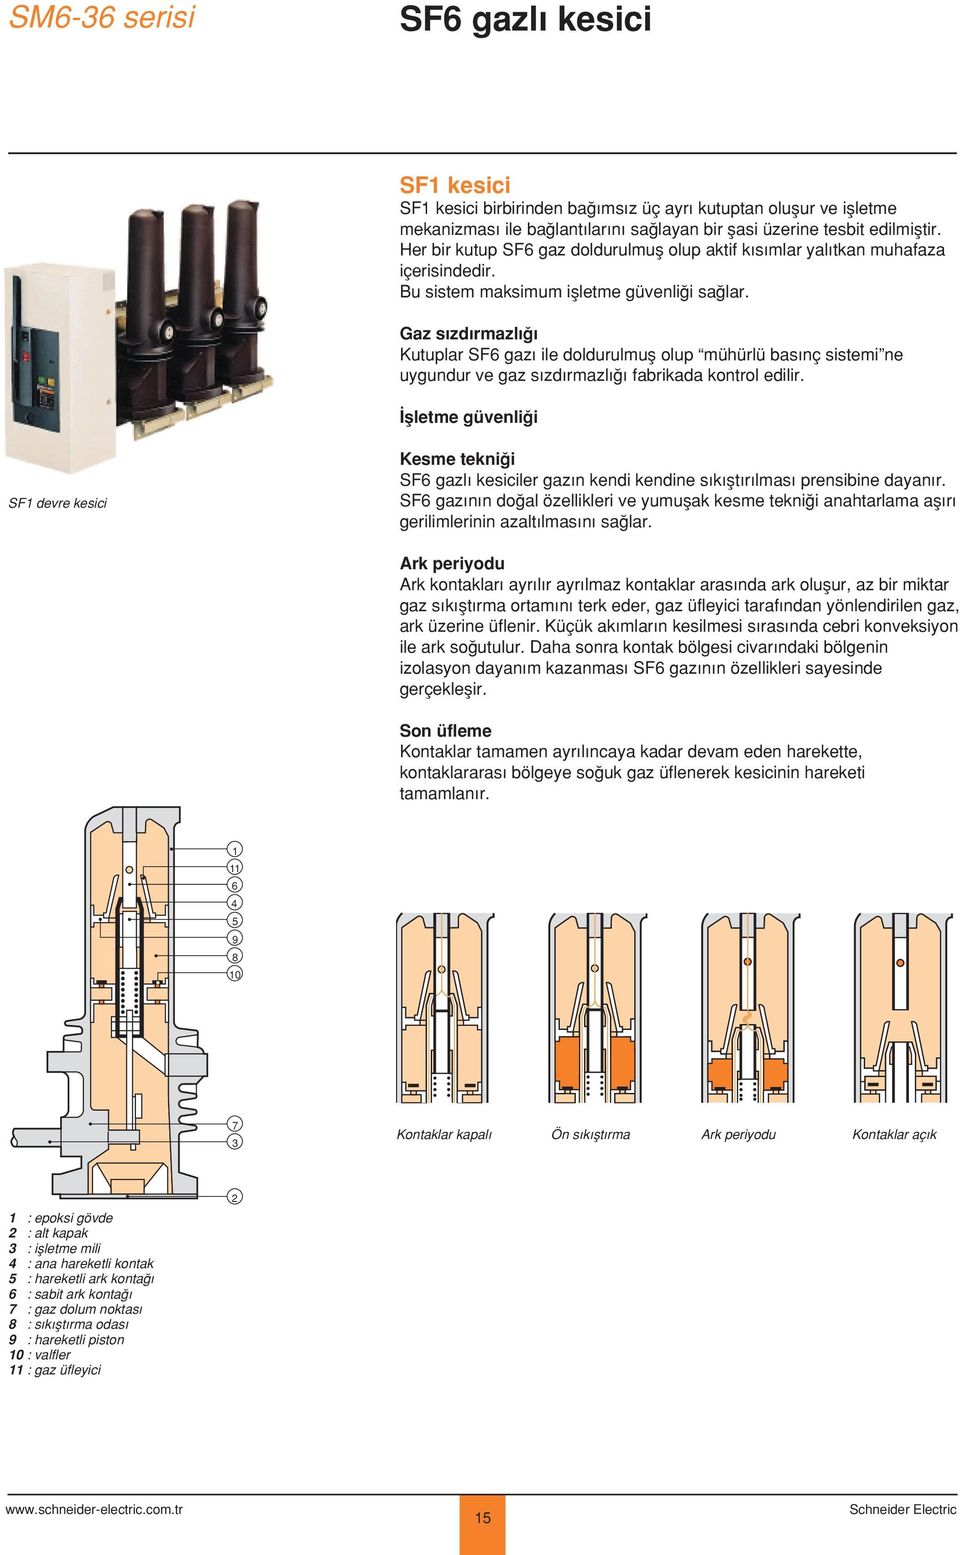 Gaz s zd rmazl Kutuplar SF6 gaz ile doldurulmufl olup mühürlü bas nç sistemi ne uygundur ve gaz s zd rmazl fabrikada kontrol edilir.